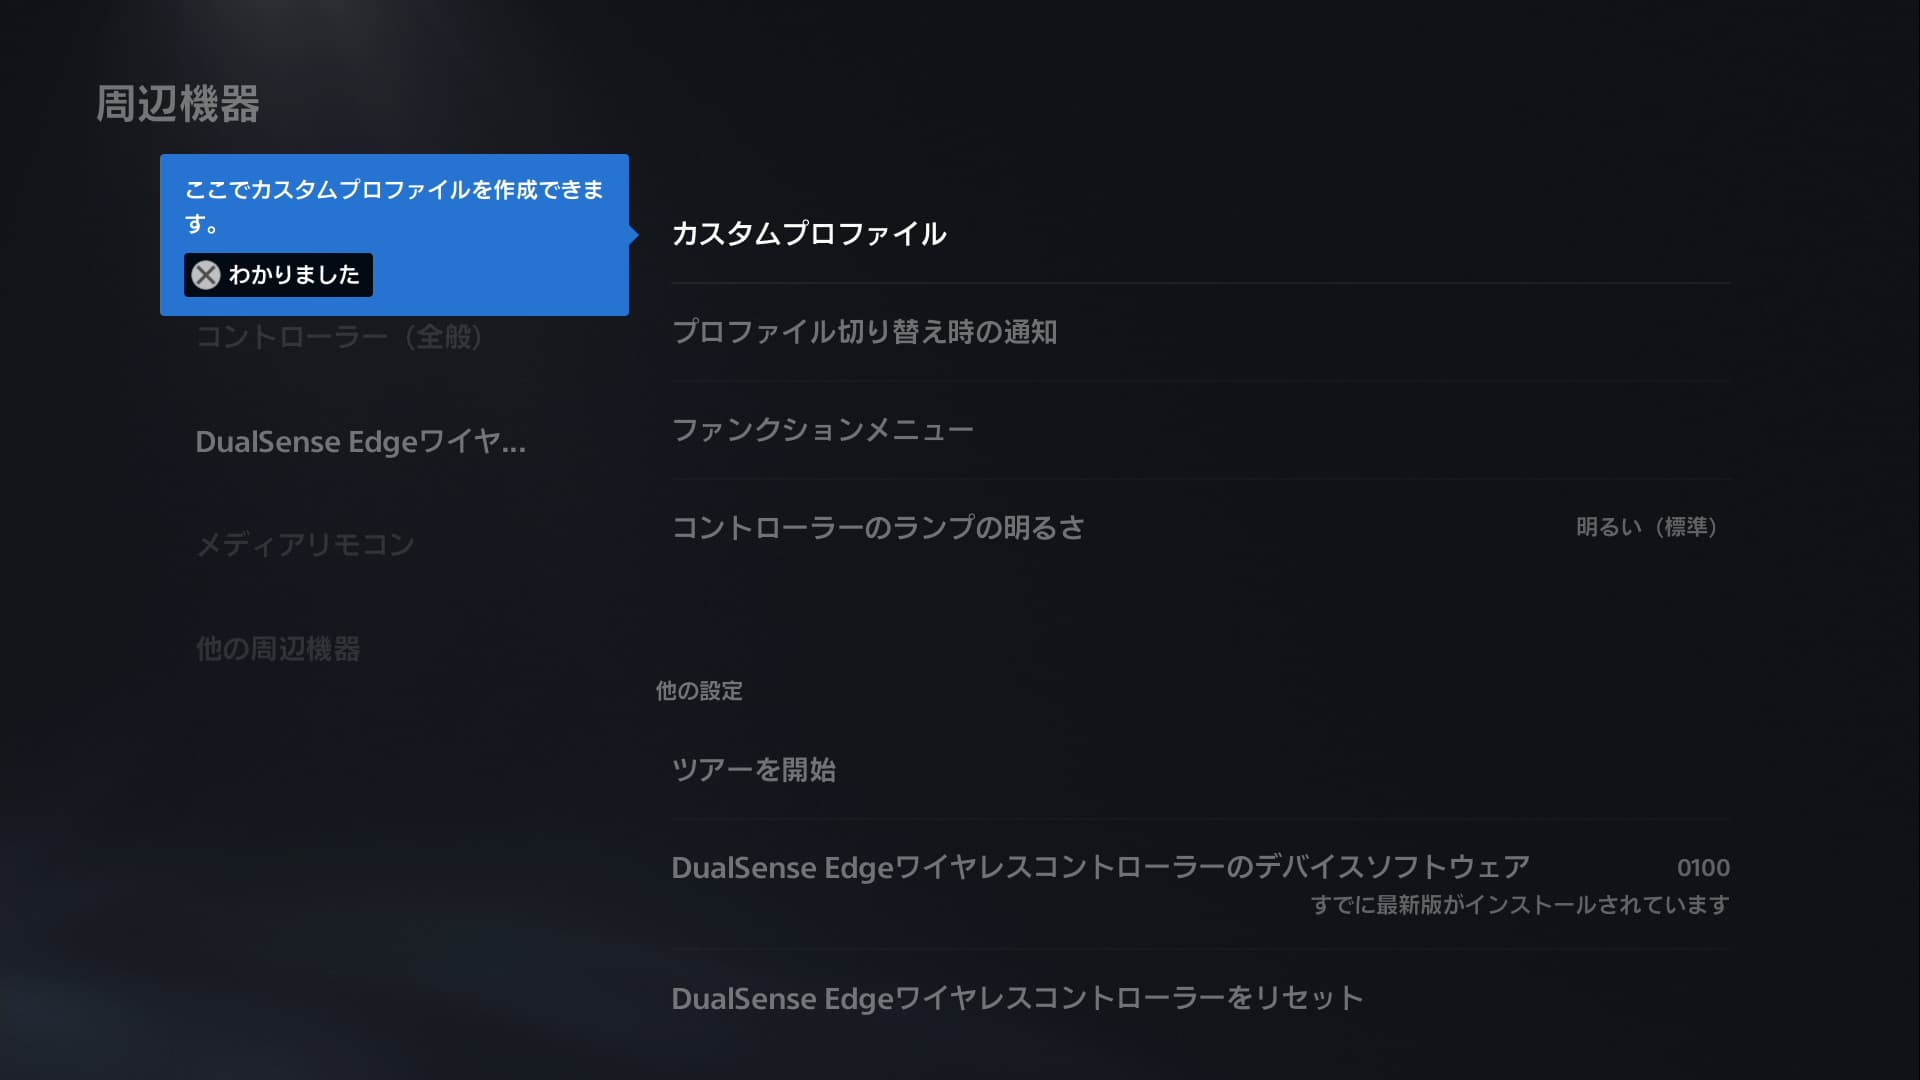 DualSense Edgeのカスタムプロファイルの作成画面